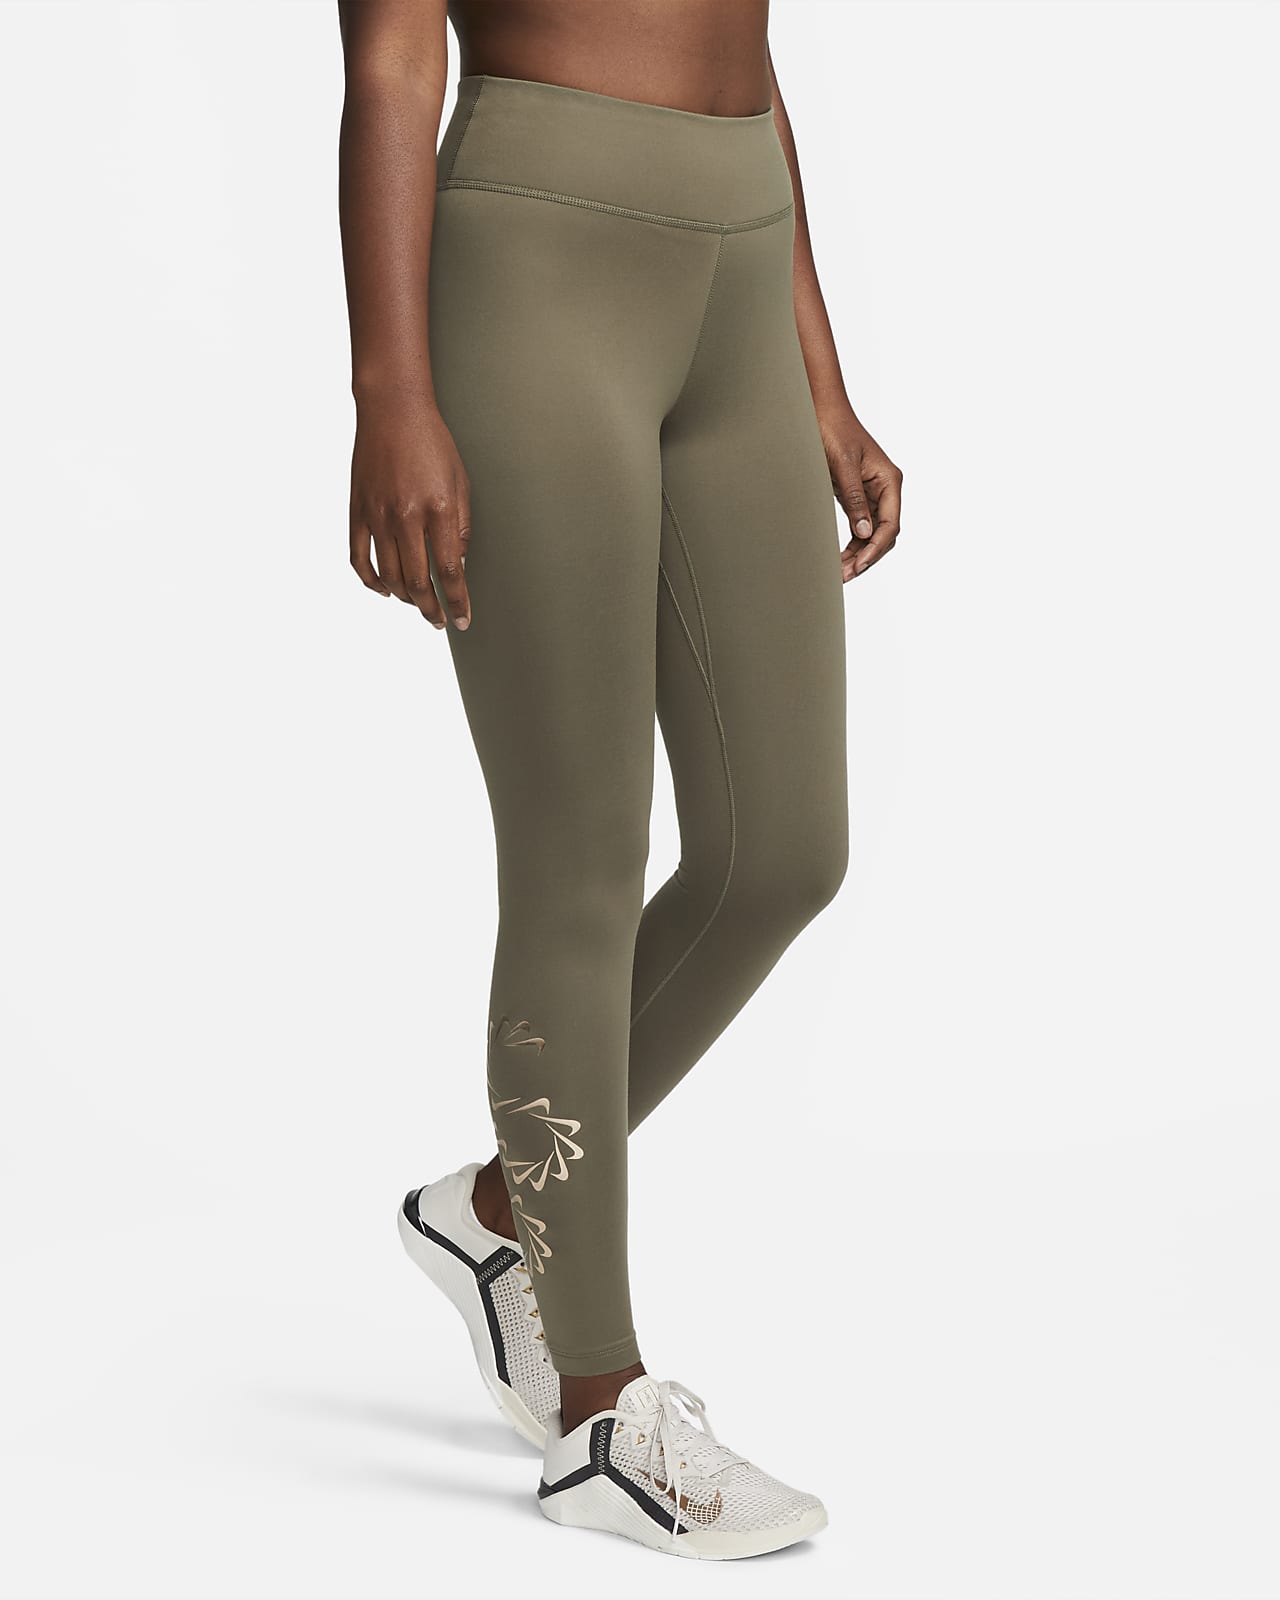 Legging de training taille mi-haute à motif Nike Therma-FIT One pour femme